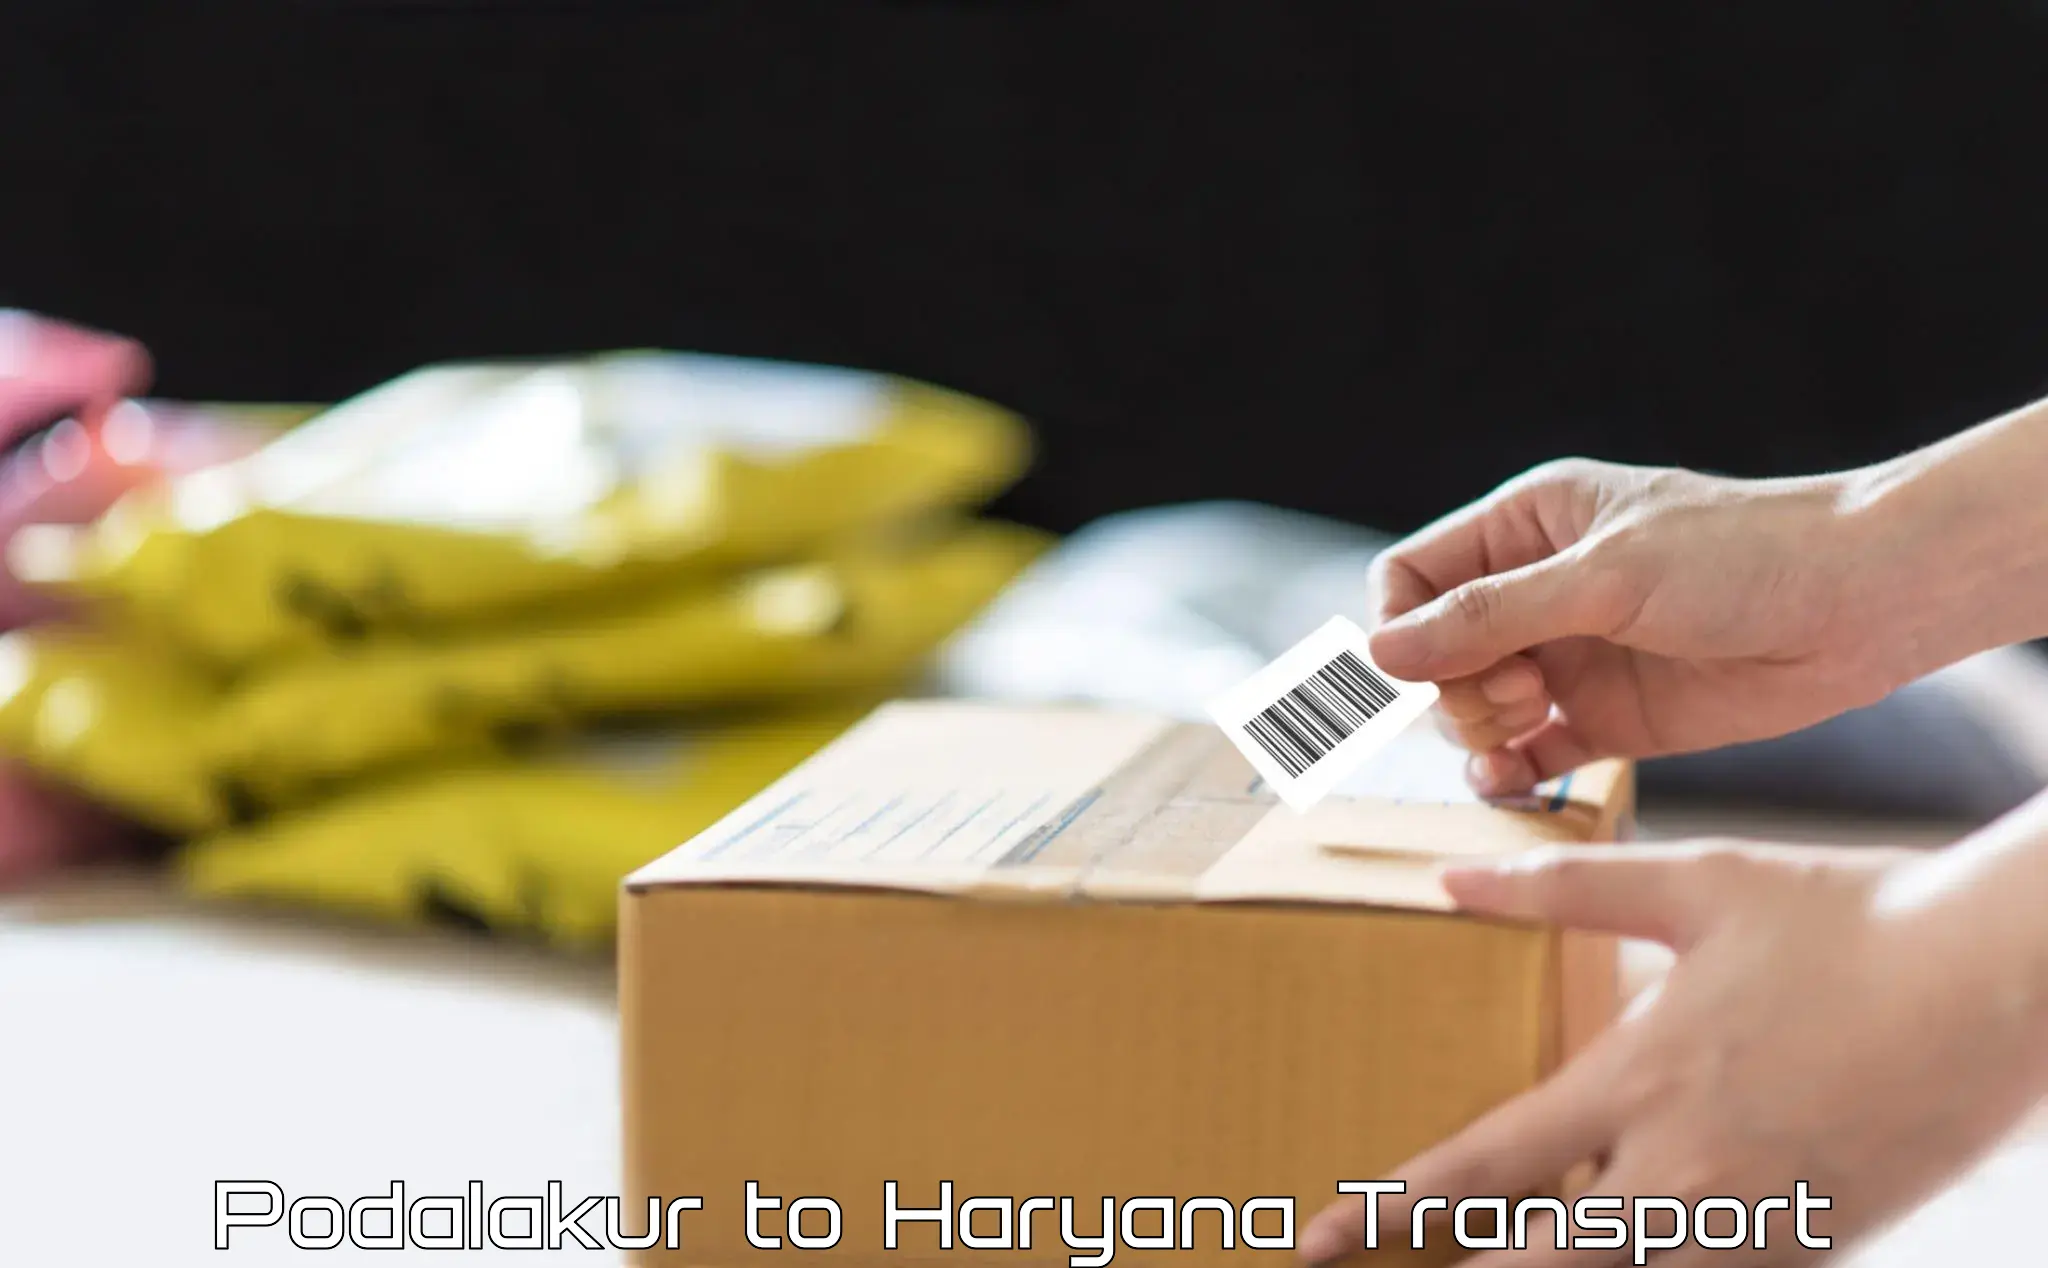 Cargo transportation services Podalakur to Haryana